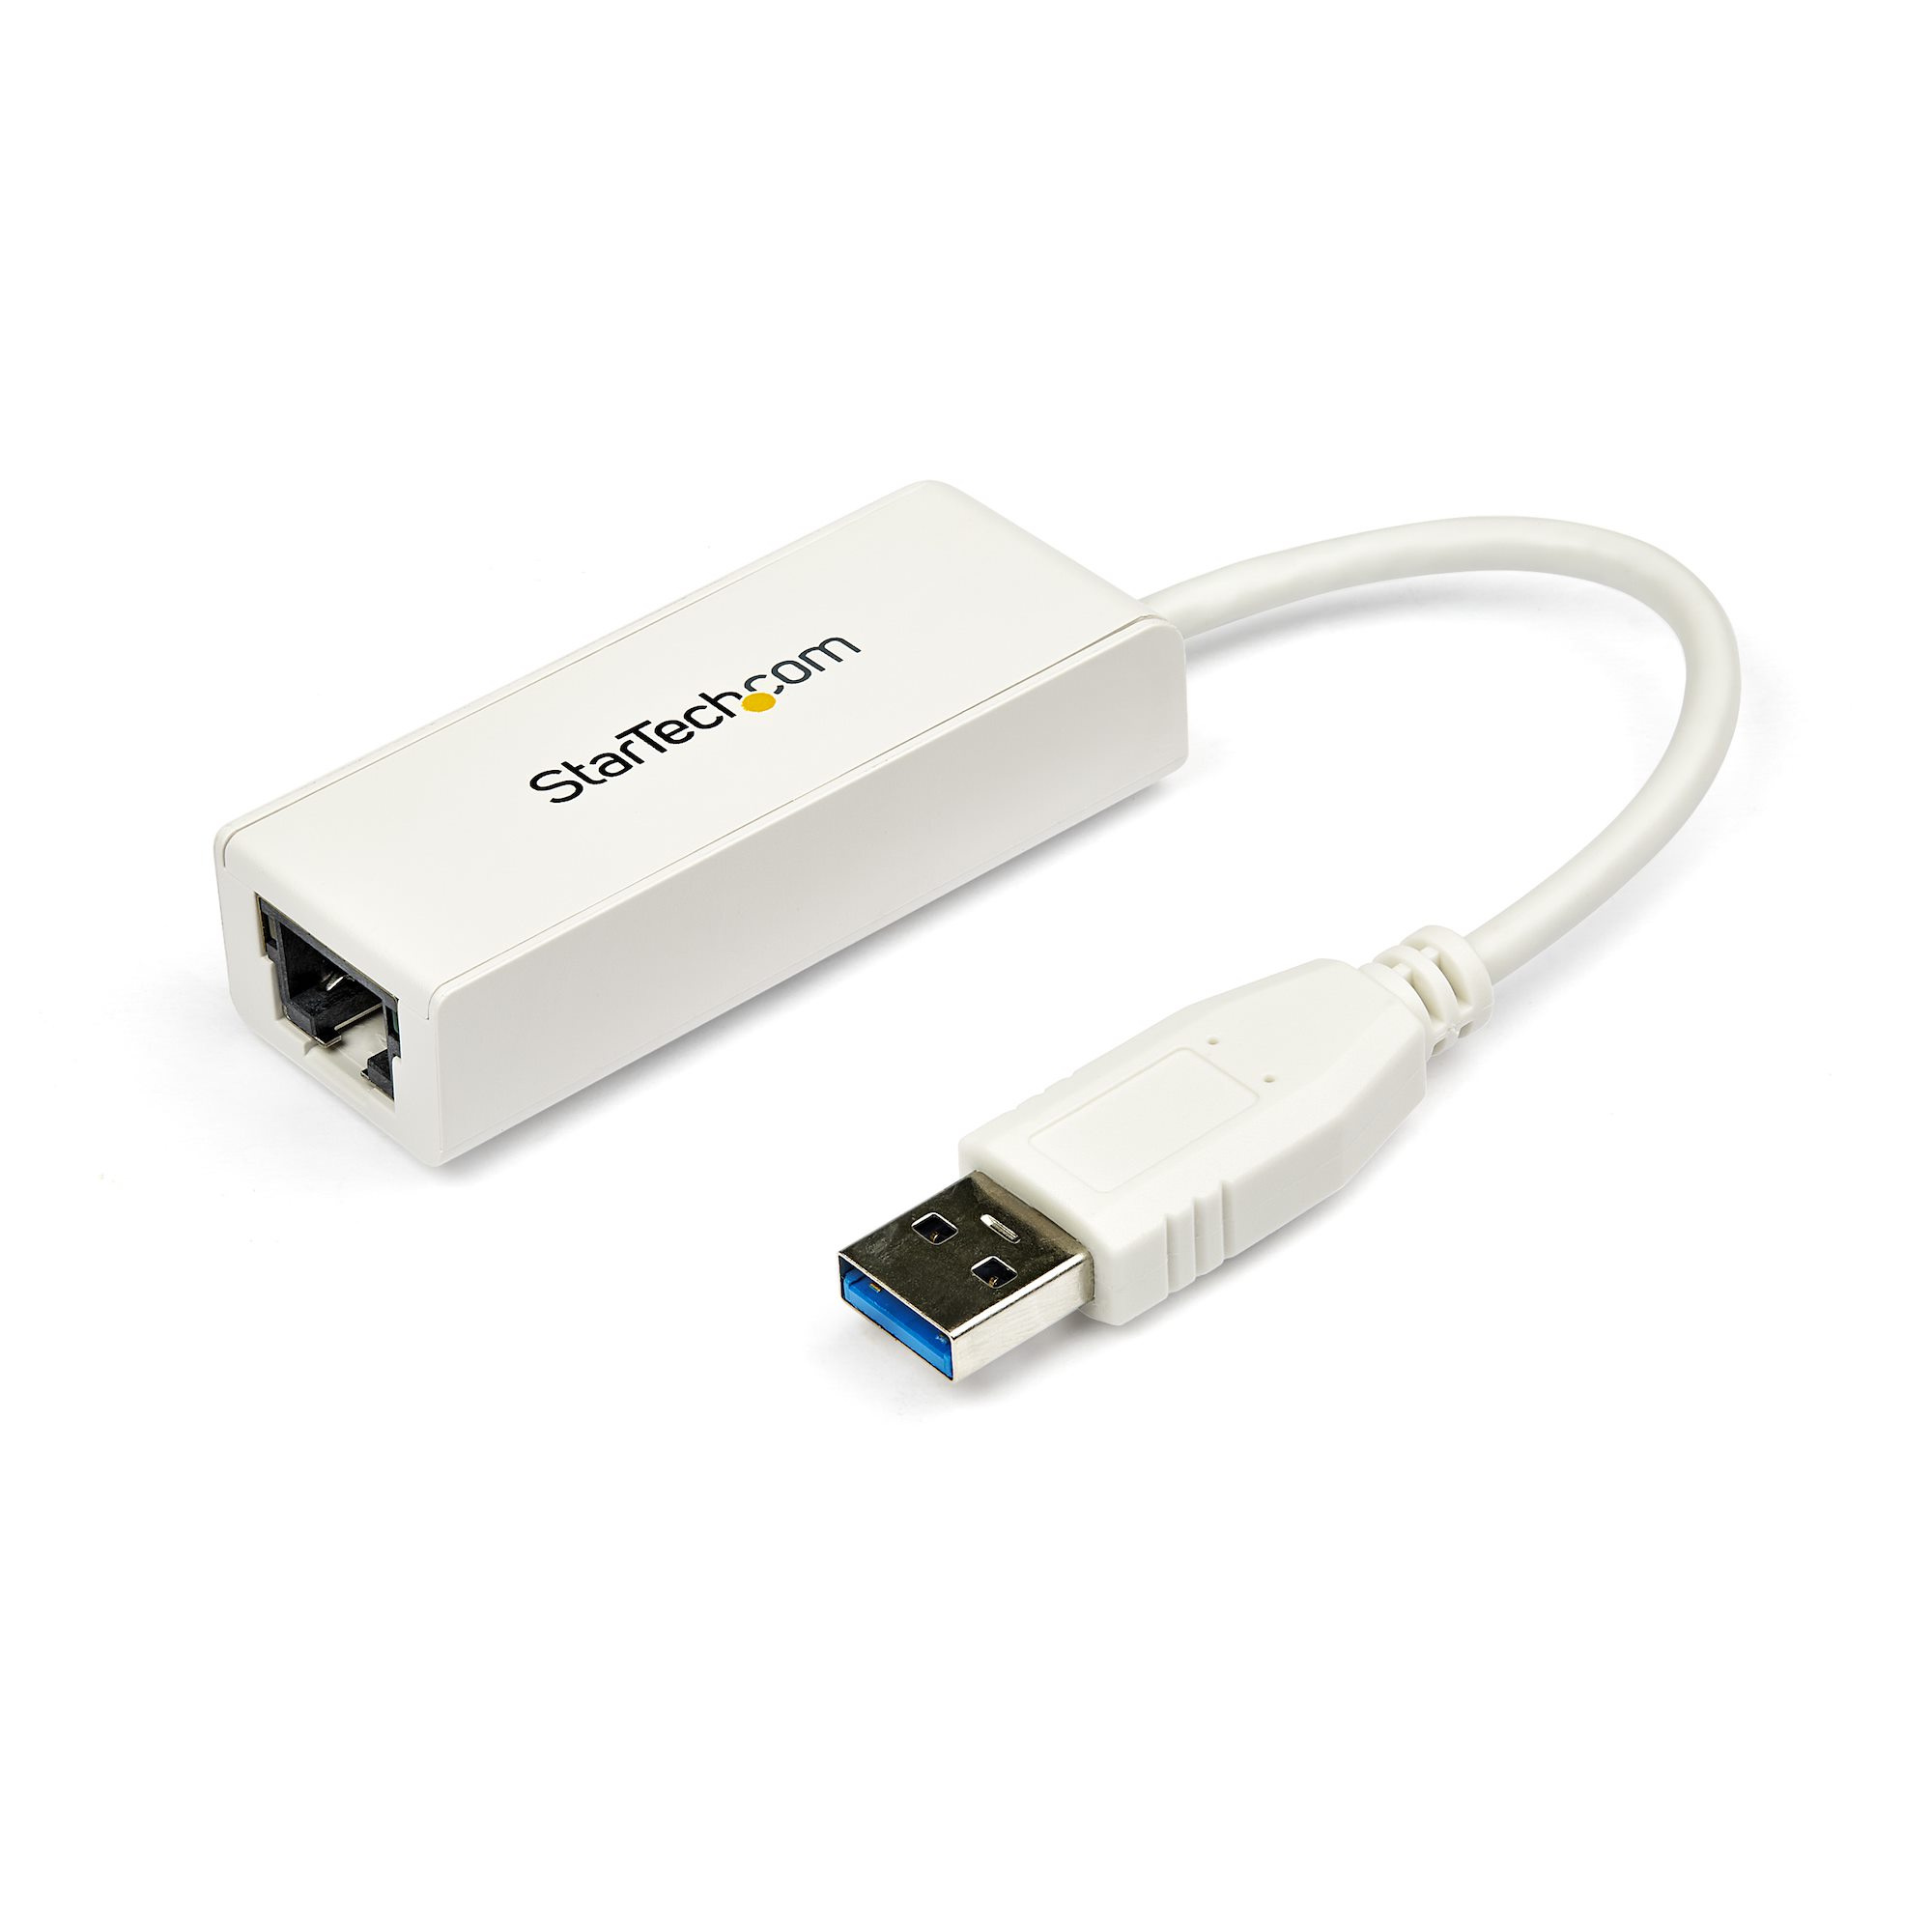 Descubrimiento vacío pompa USB 3.0 to Gigabit Ethernet Adapter - Adaptadores de red USB y USB-C |  StarTech.com España